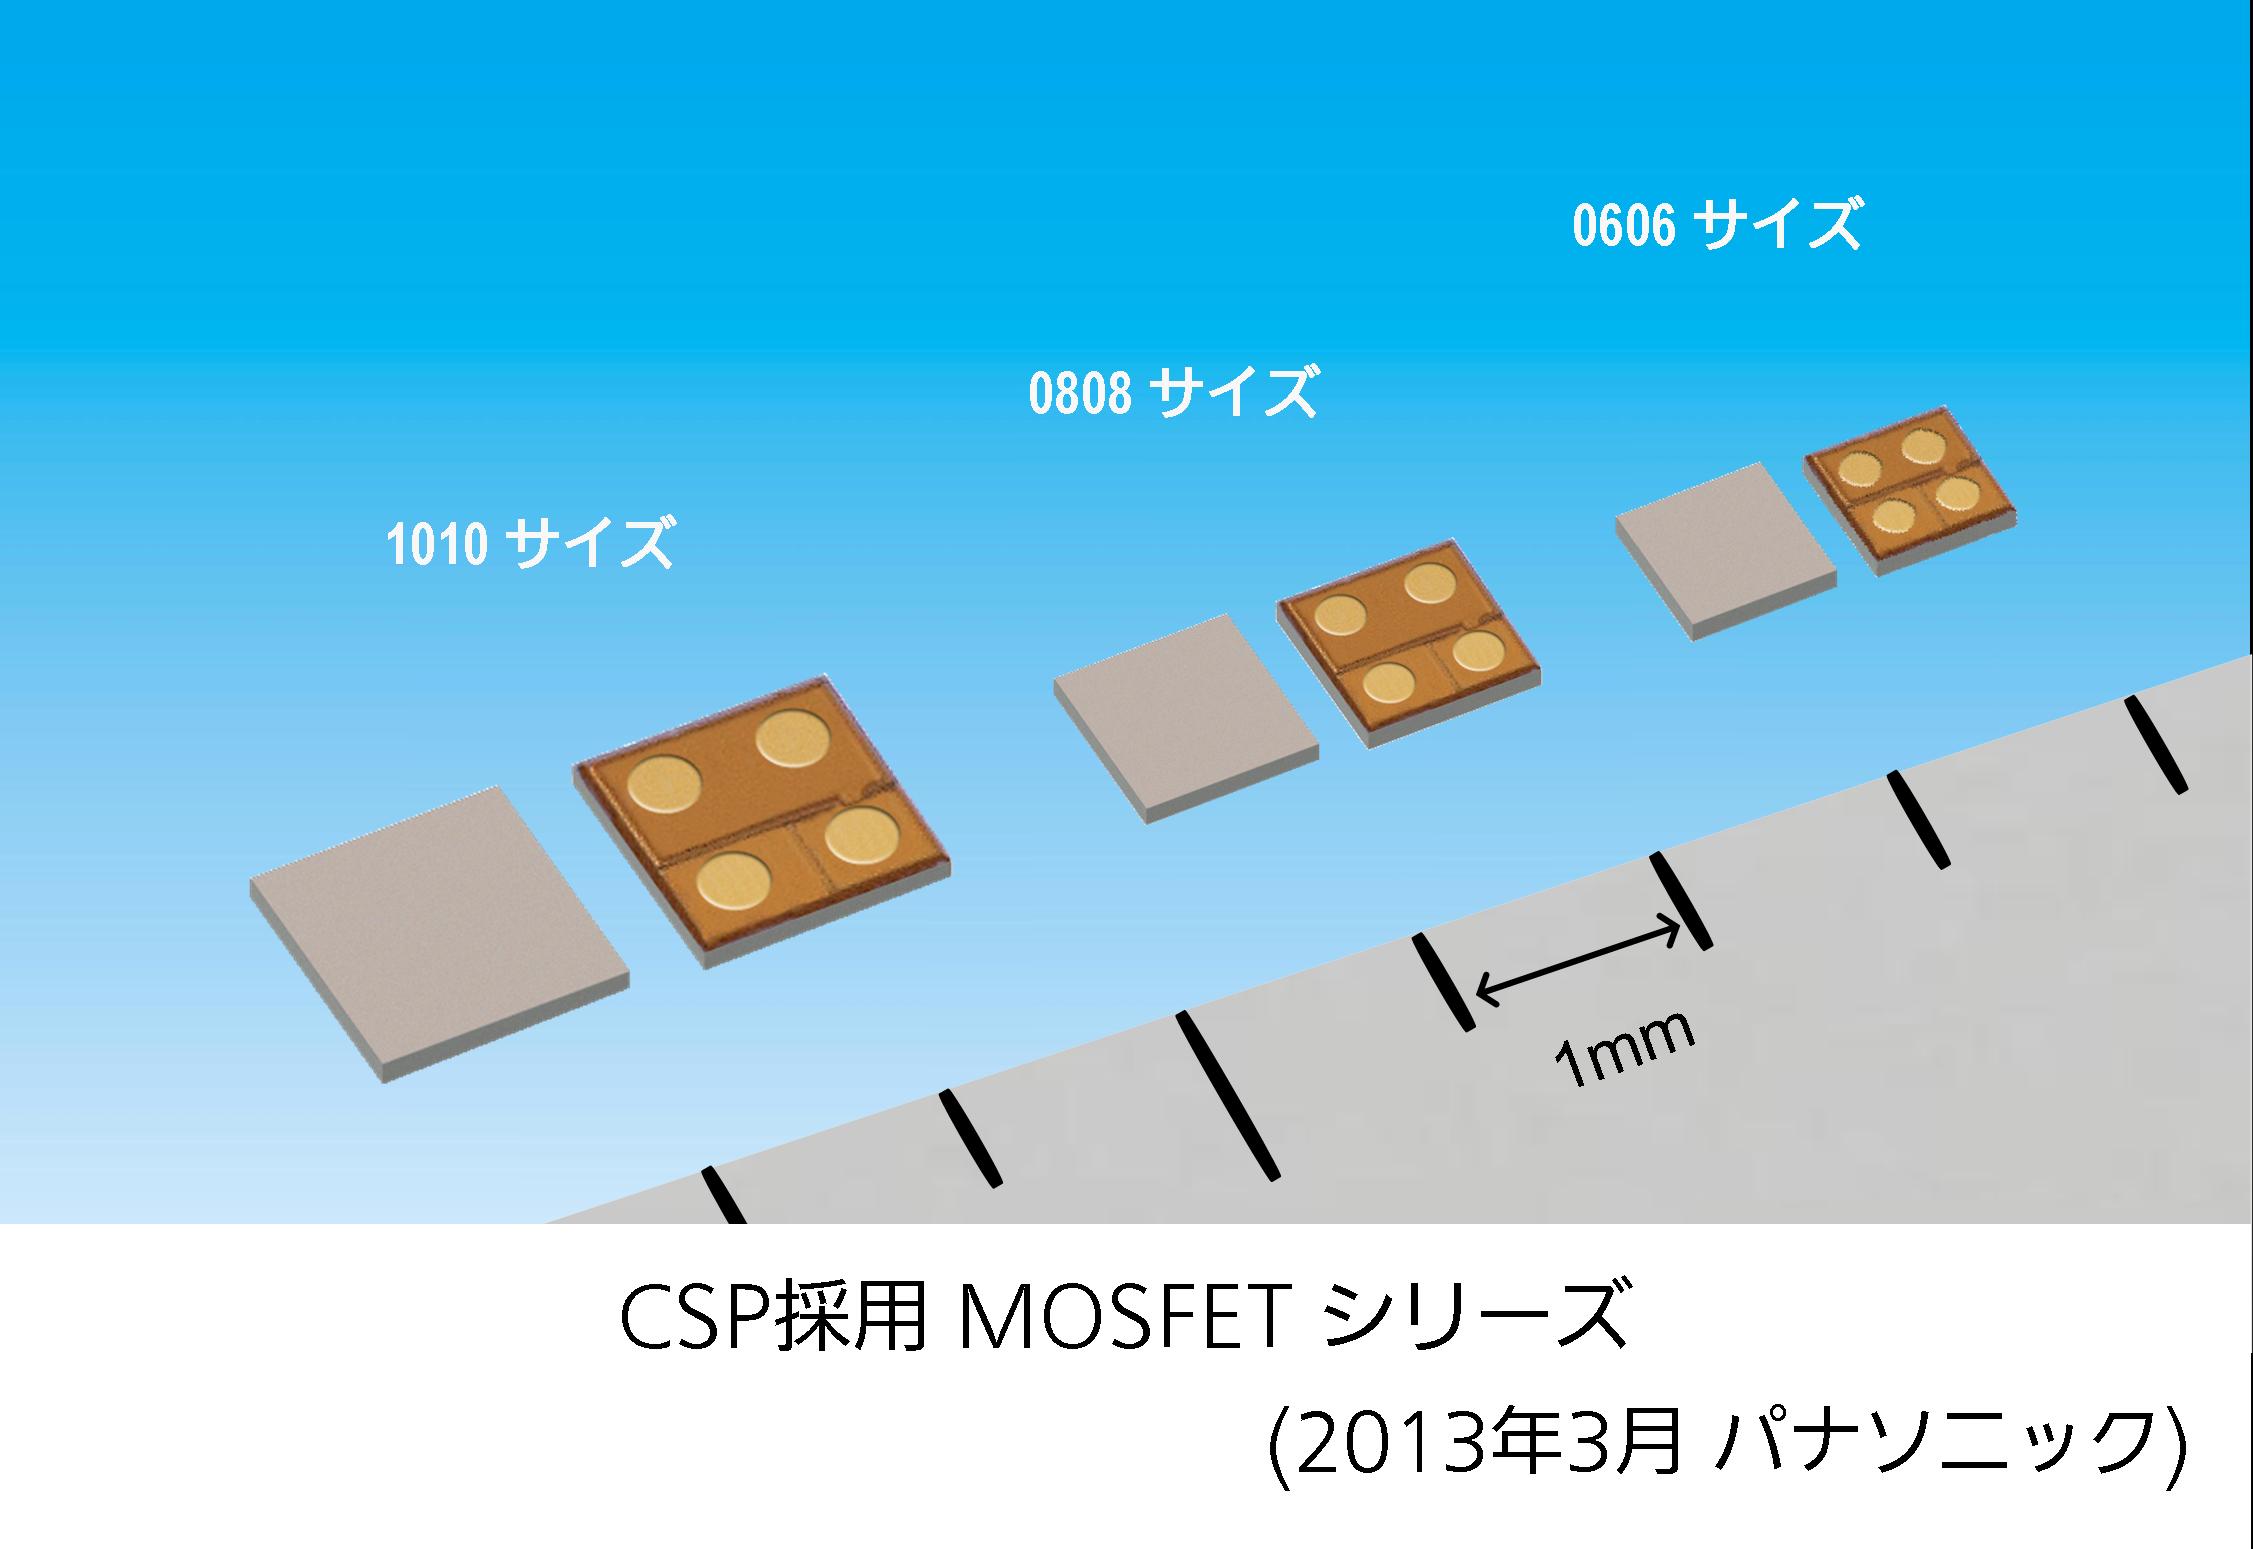 CSP採用 MOSFETシリーズ